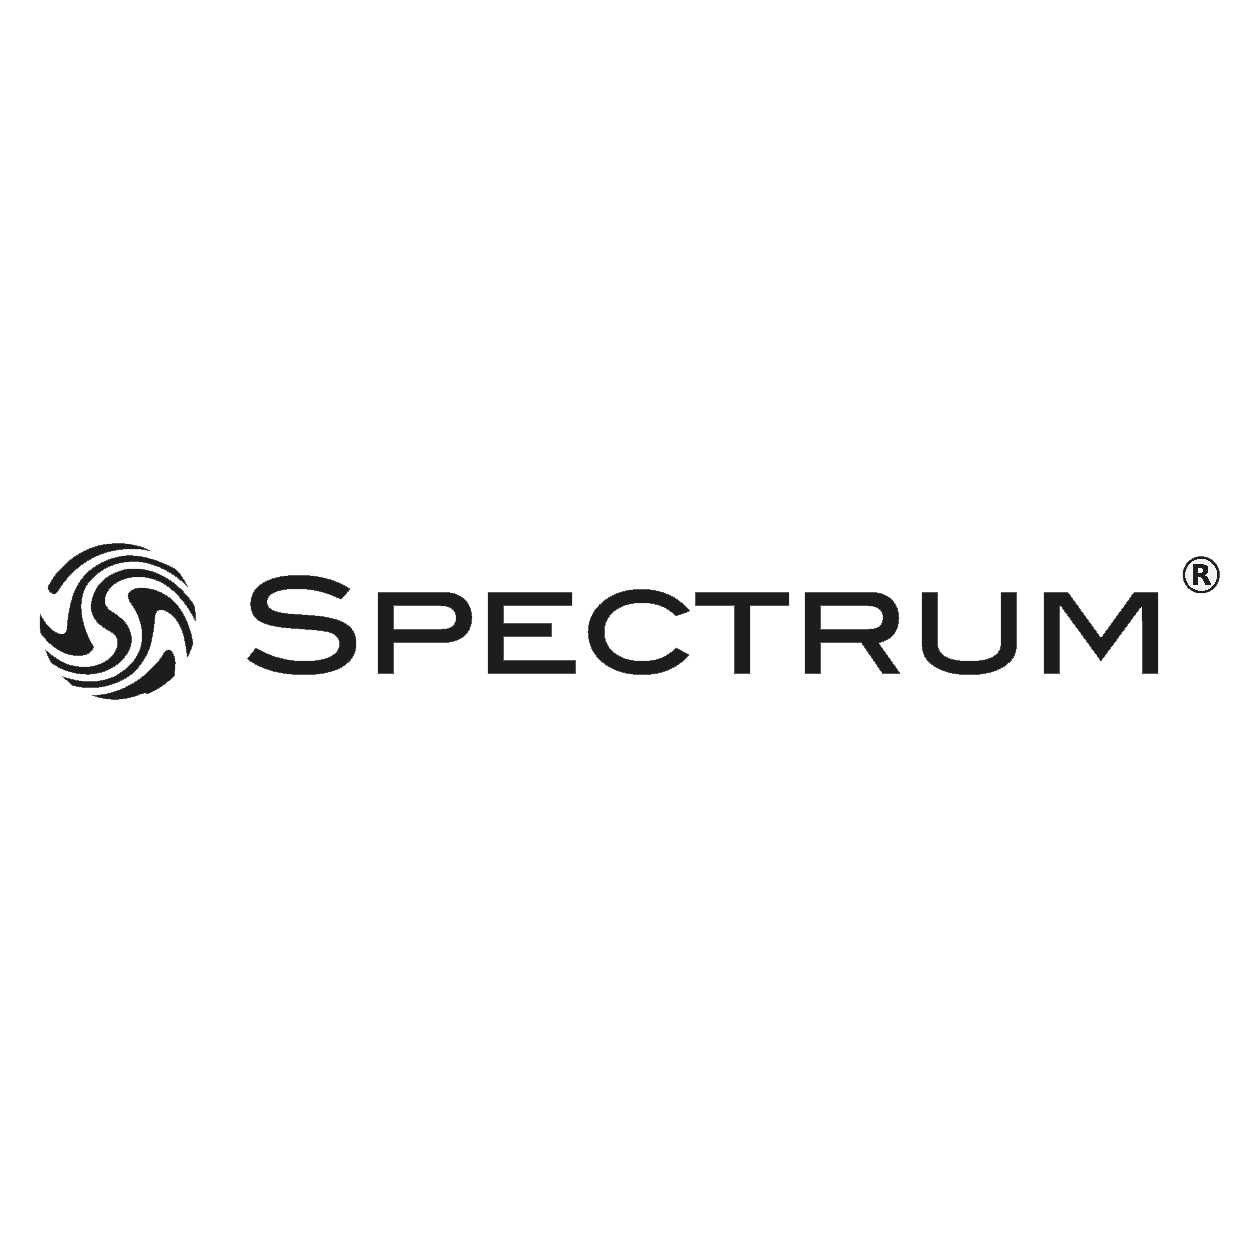 Spectrum Tag Image